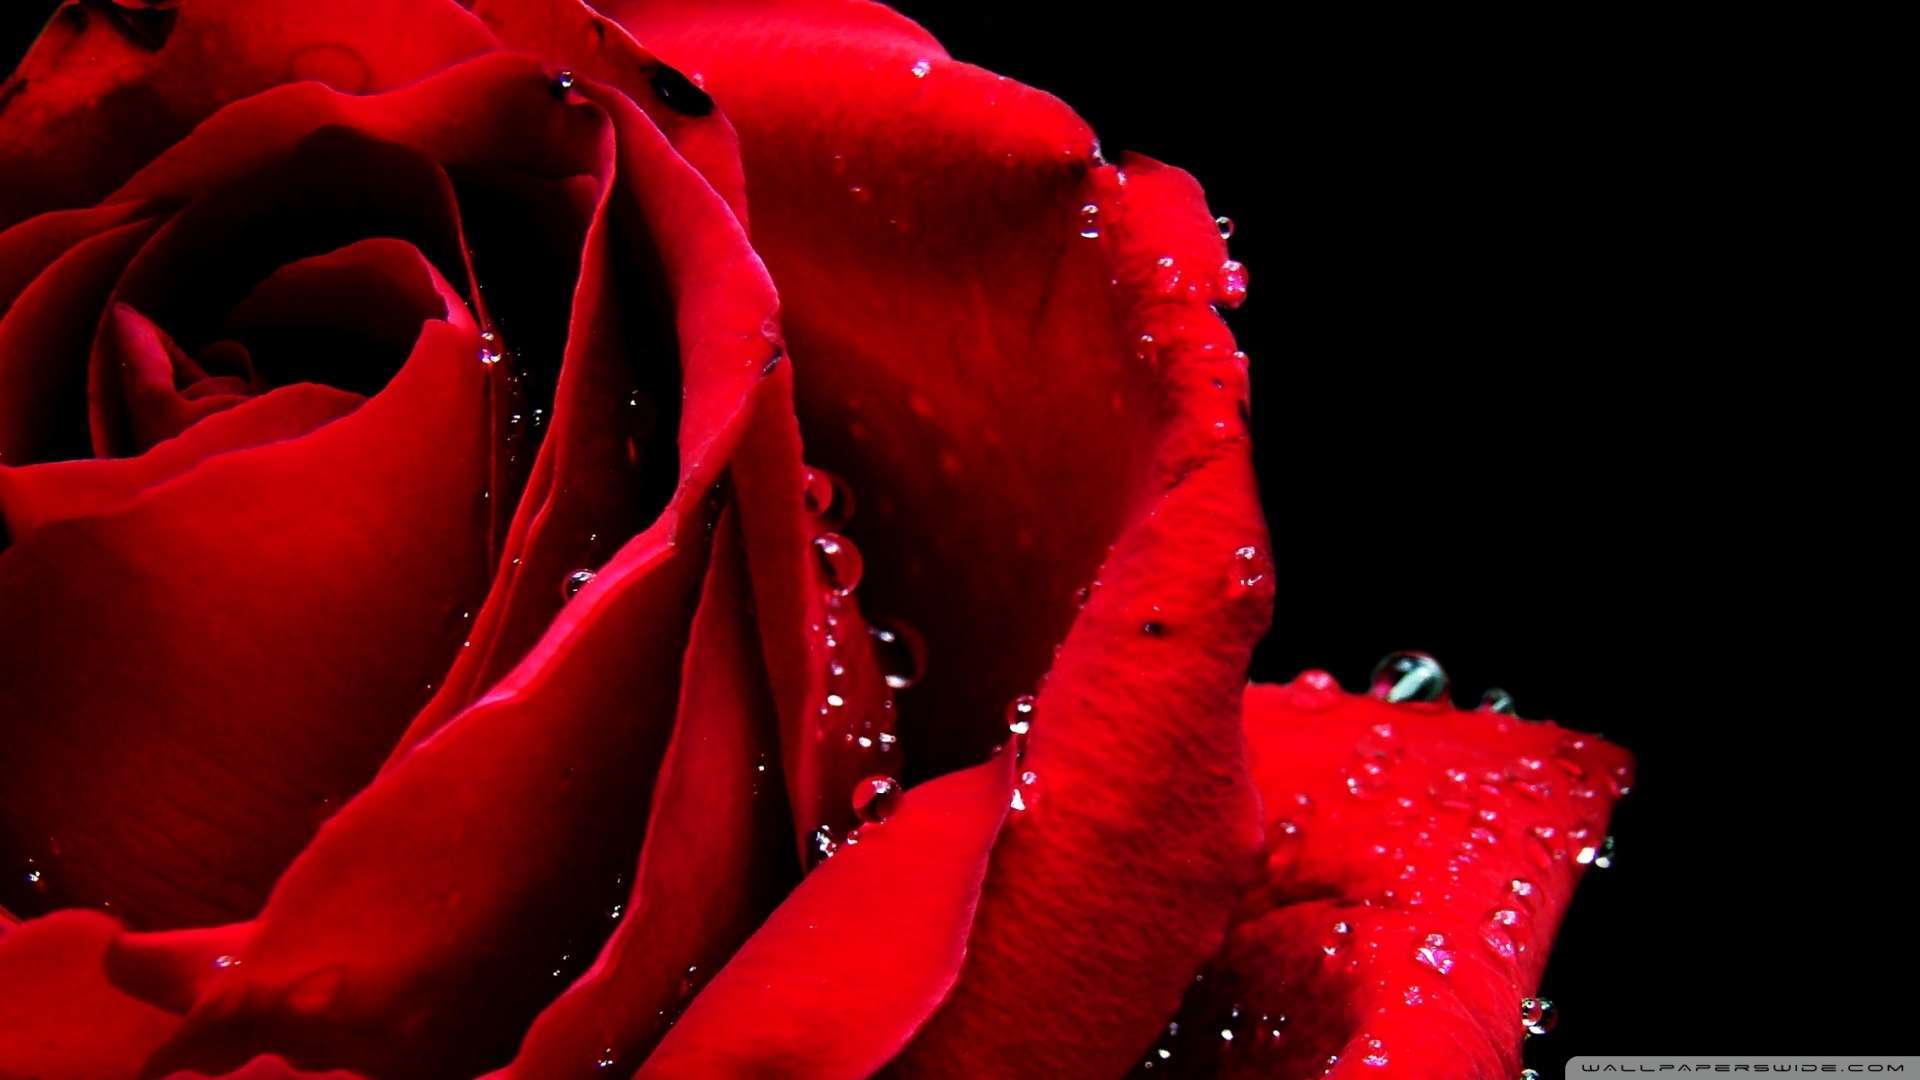 Wallpaper Red Rose Macro 1080p HD Upload At December